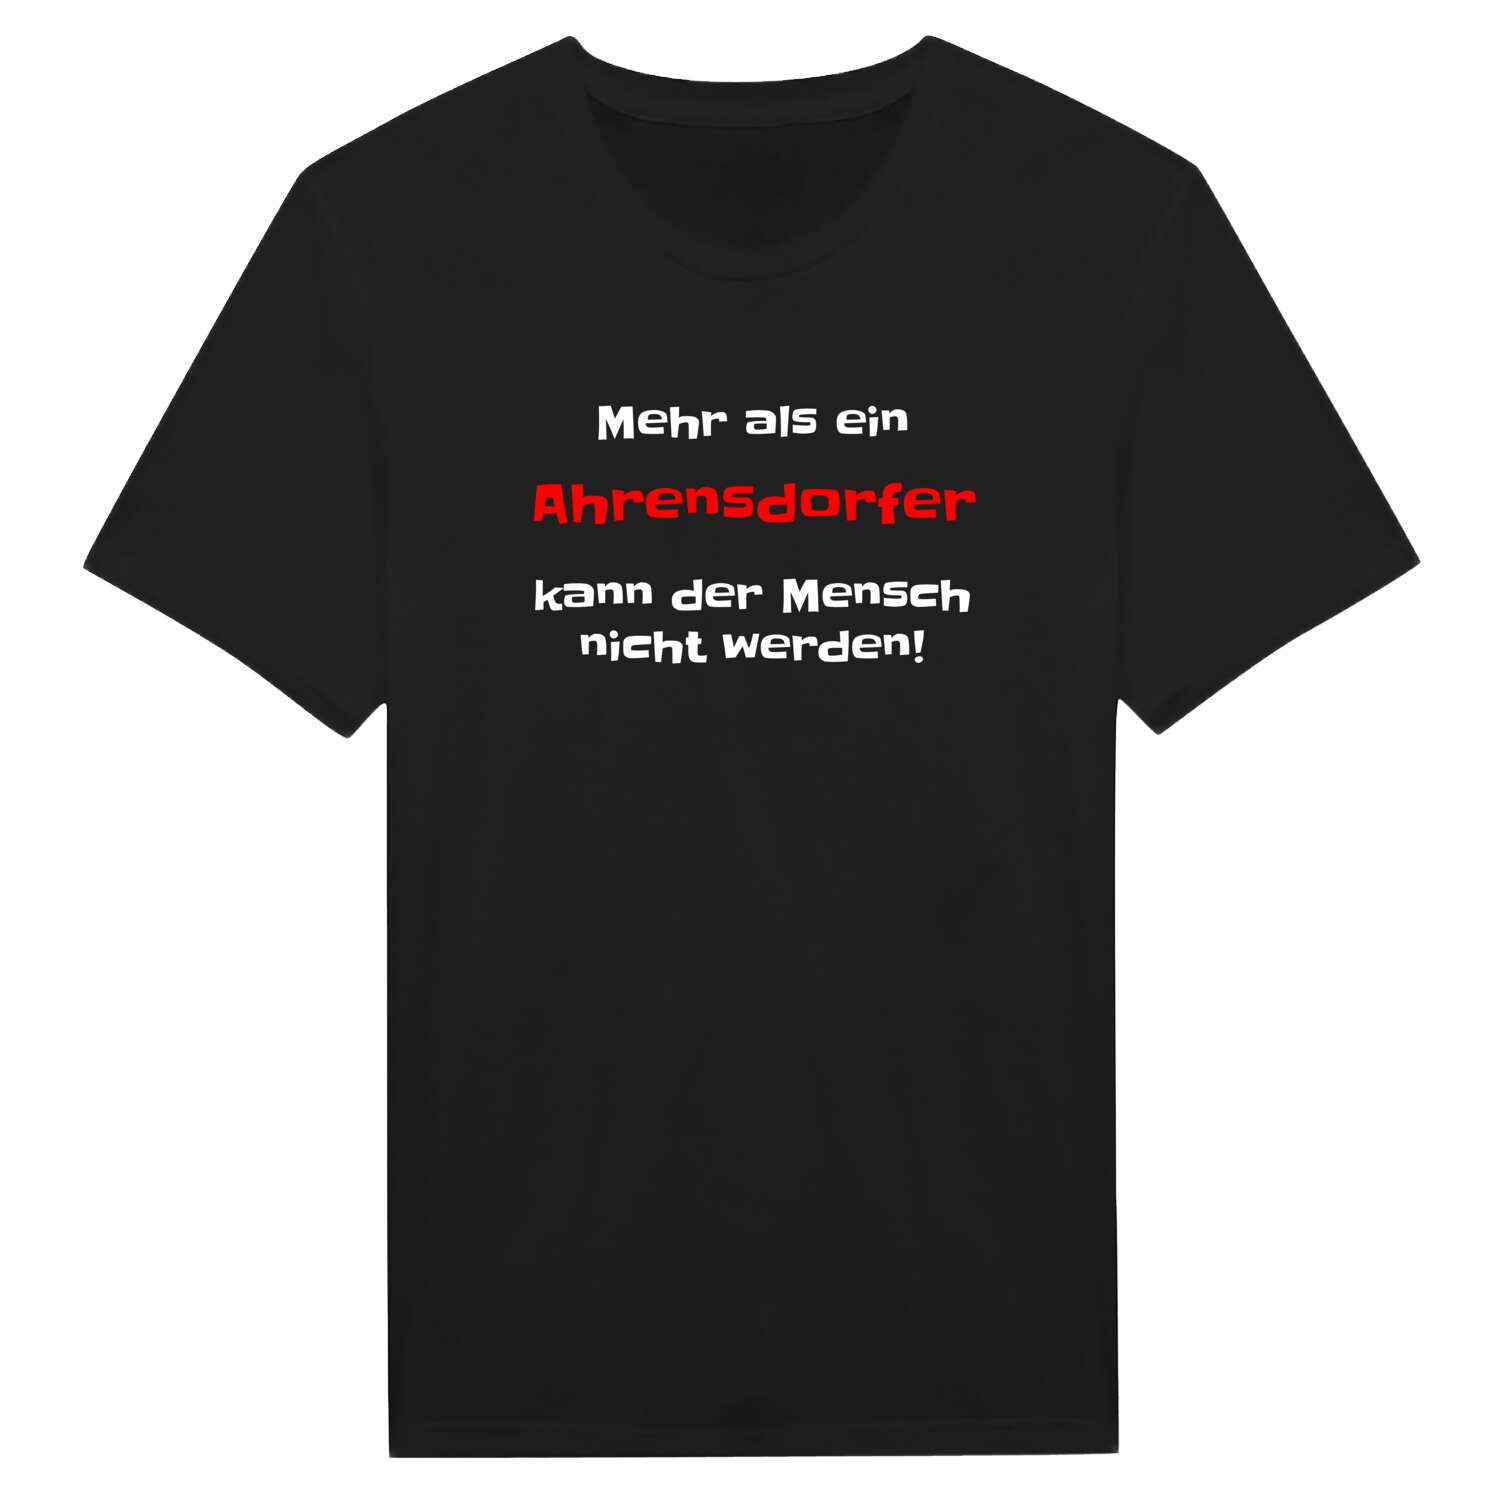 Ahrensdorf T-Shirt »Mehr als ein«